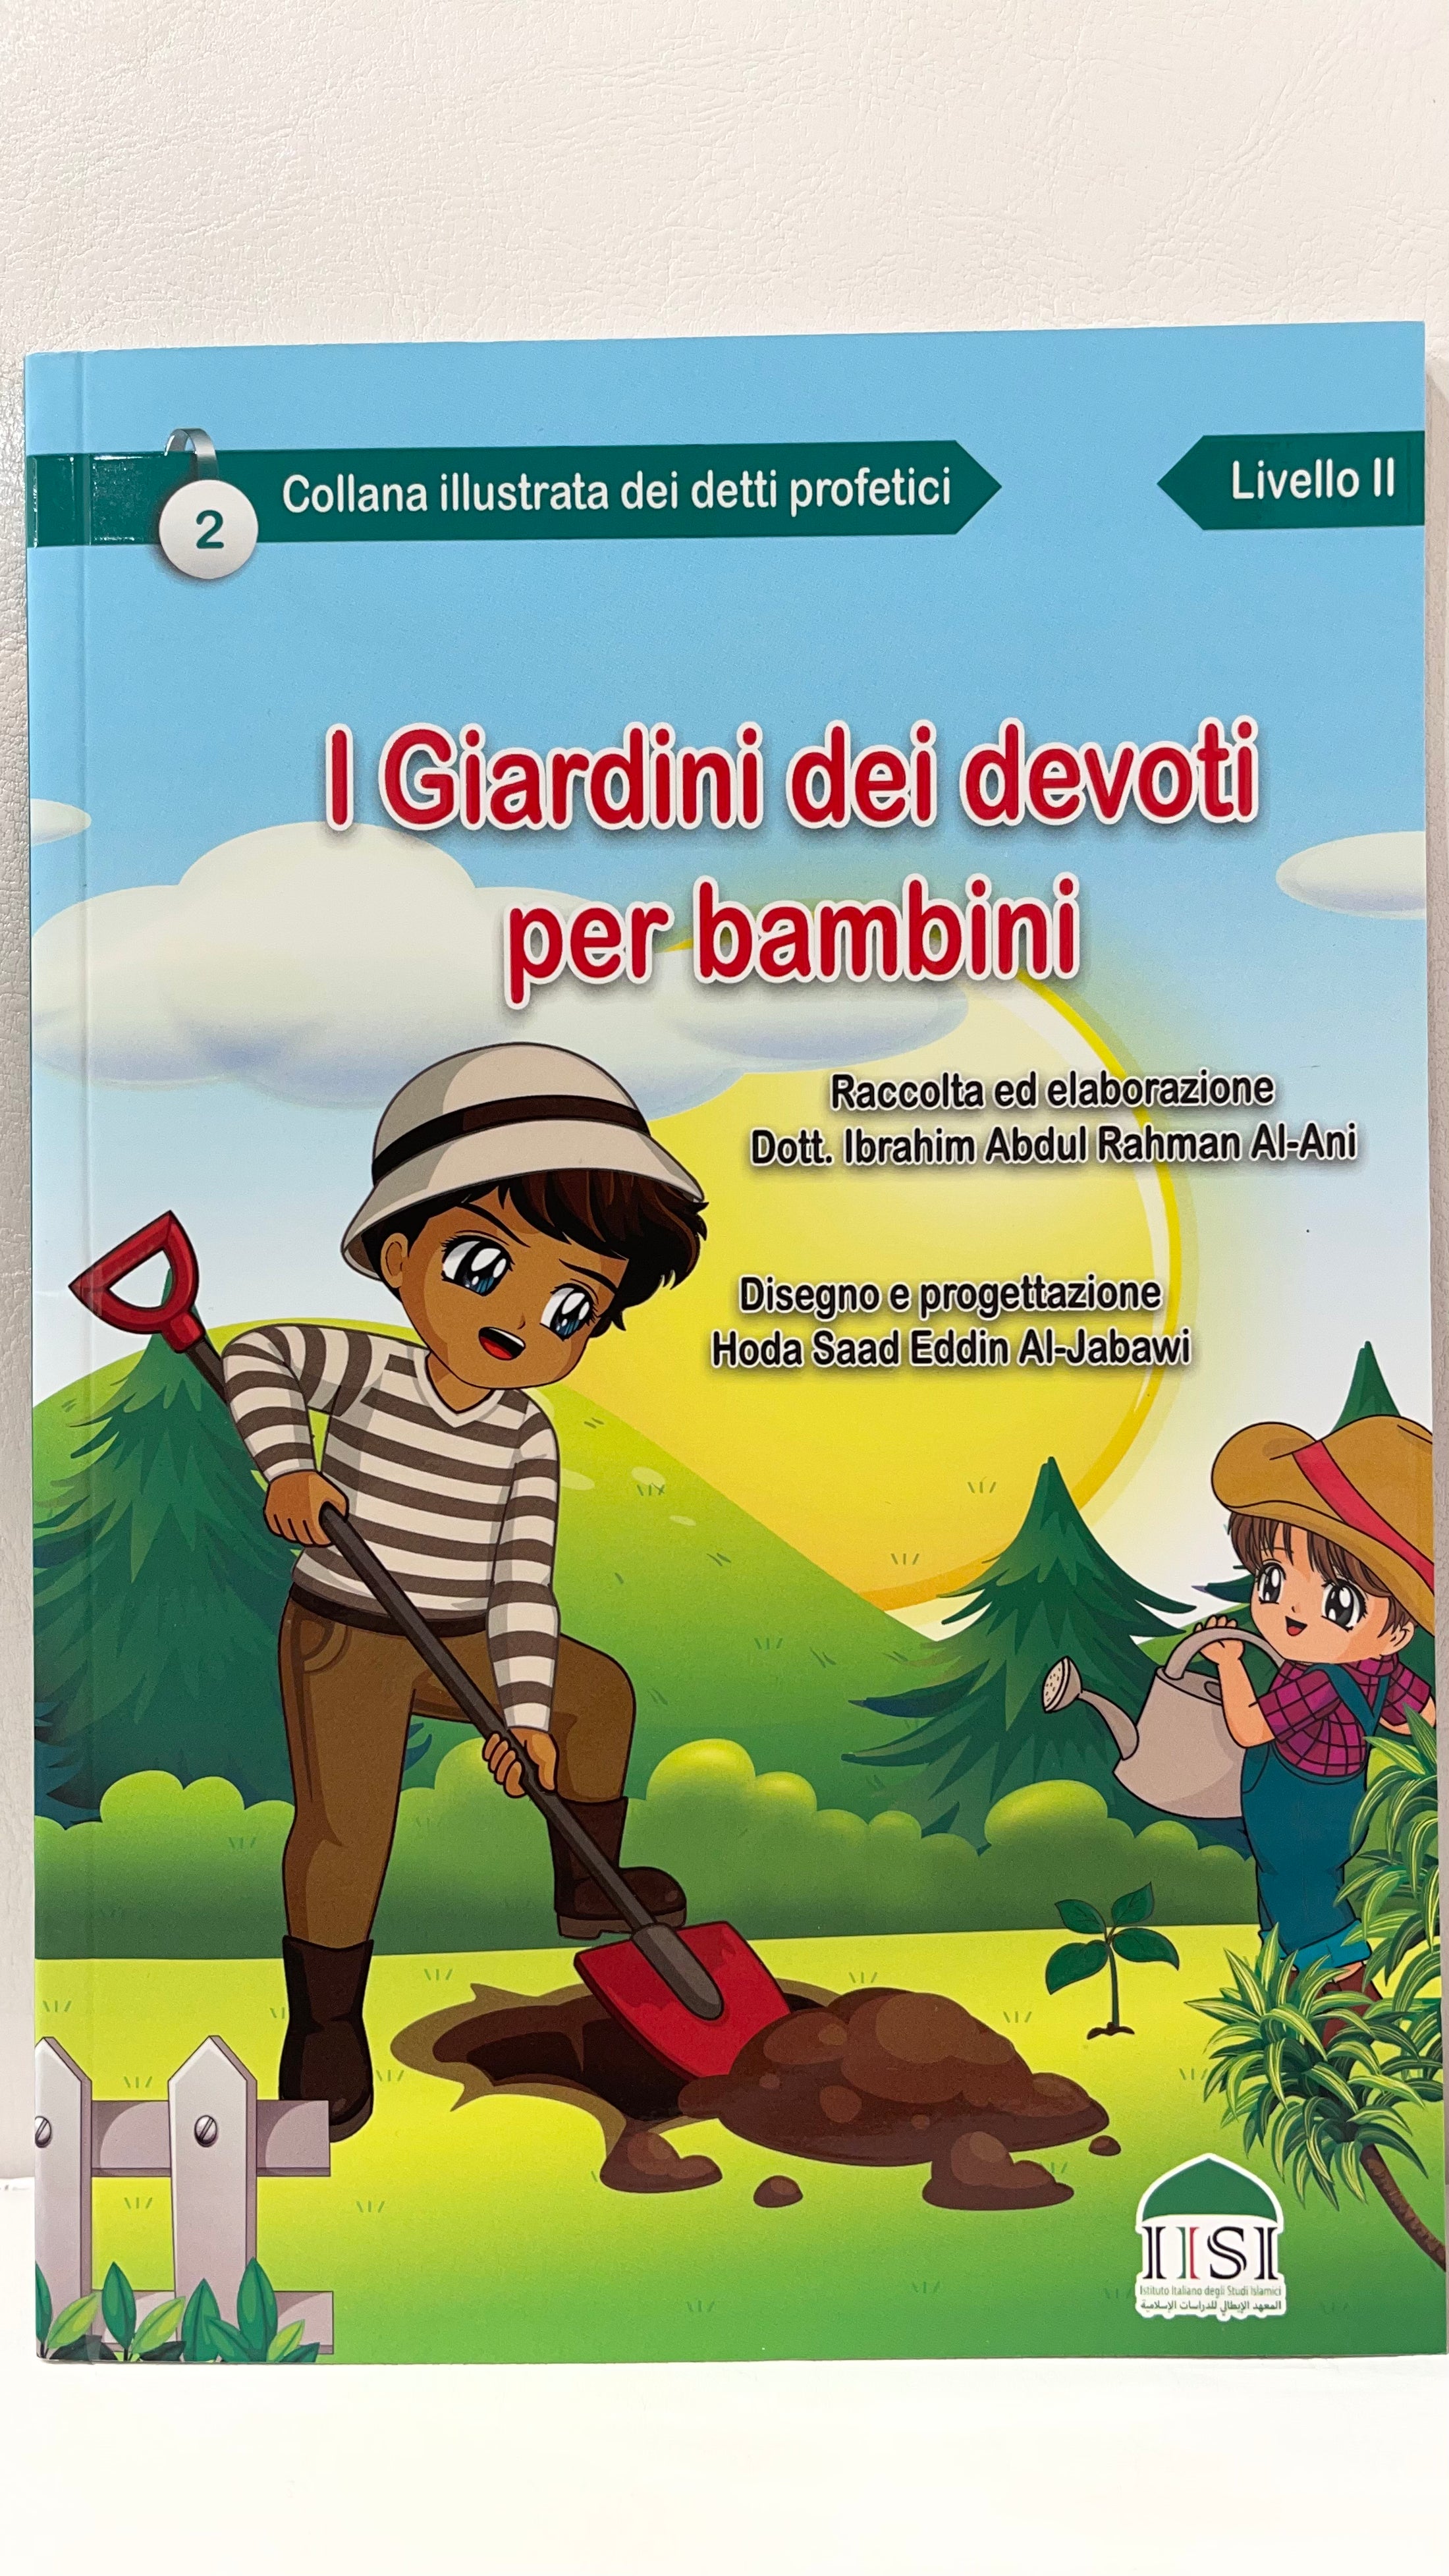 Giardini dei devoti illustrati per bambini in italiano - Hijab Paradise  - illustrazione e raccolta dei detti